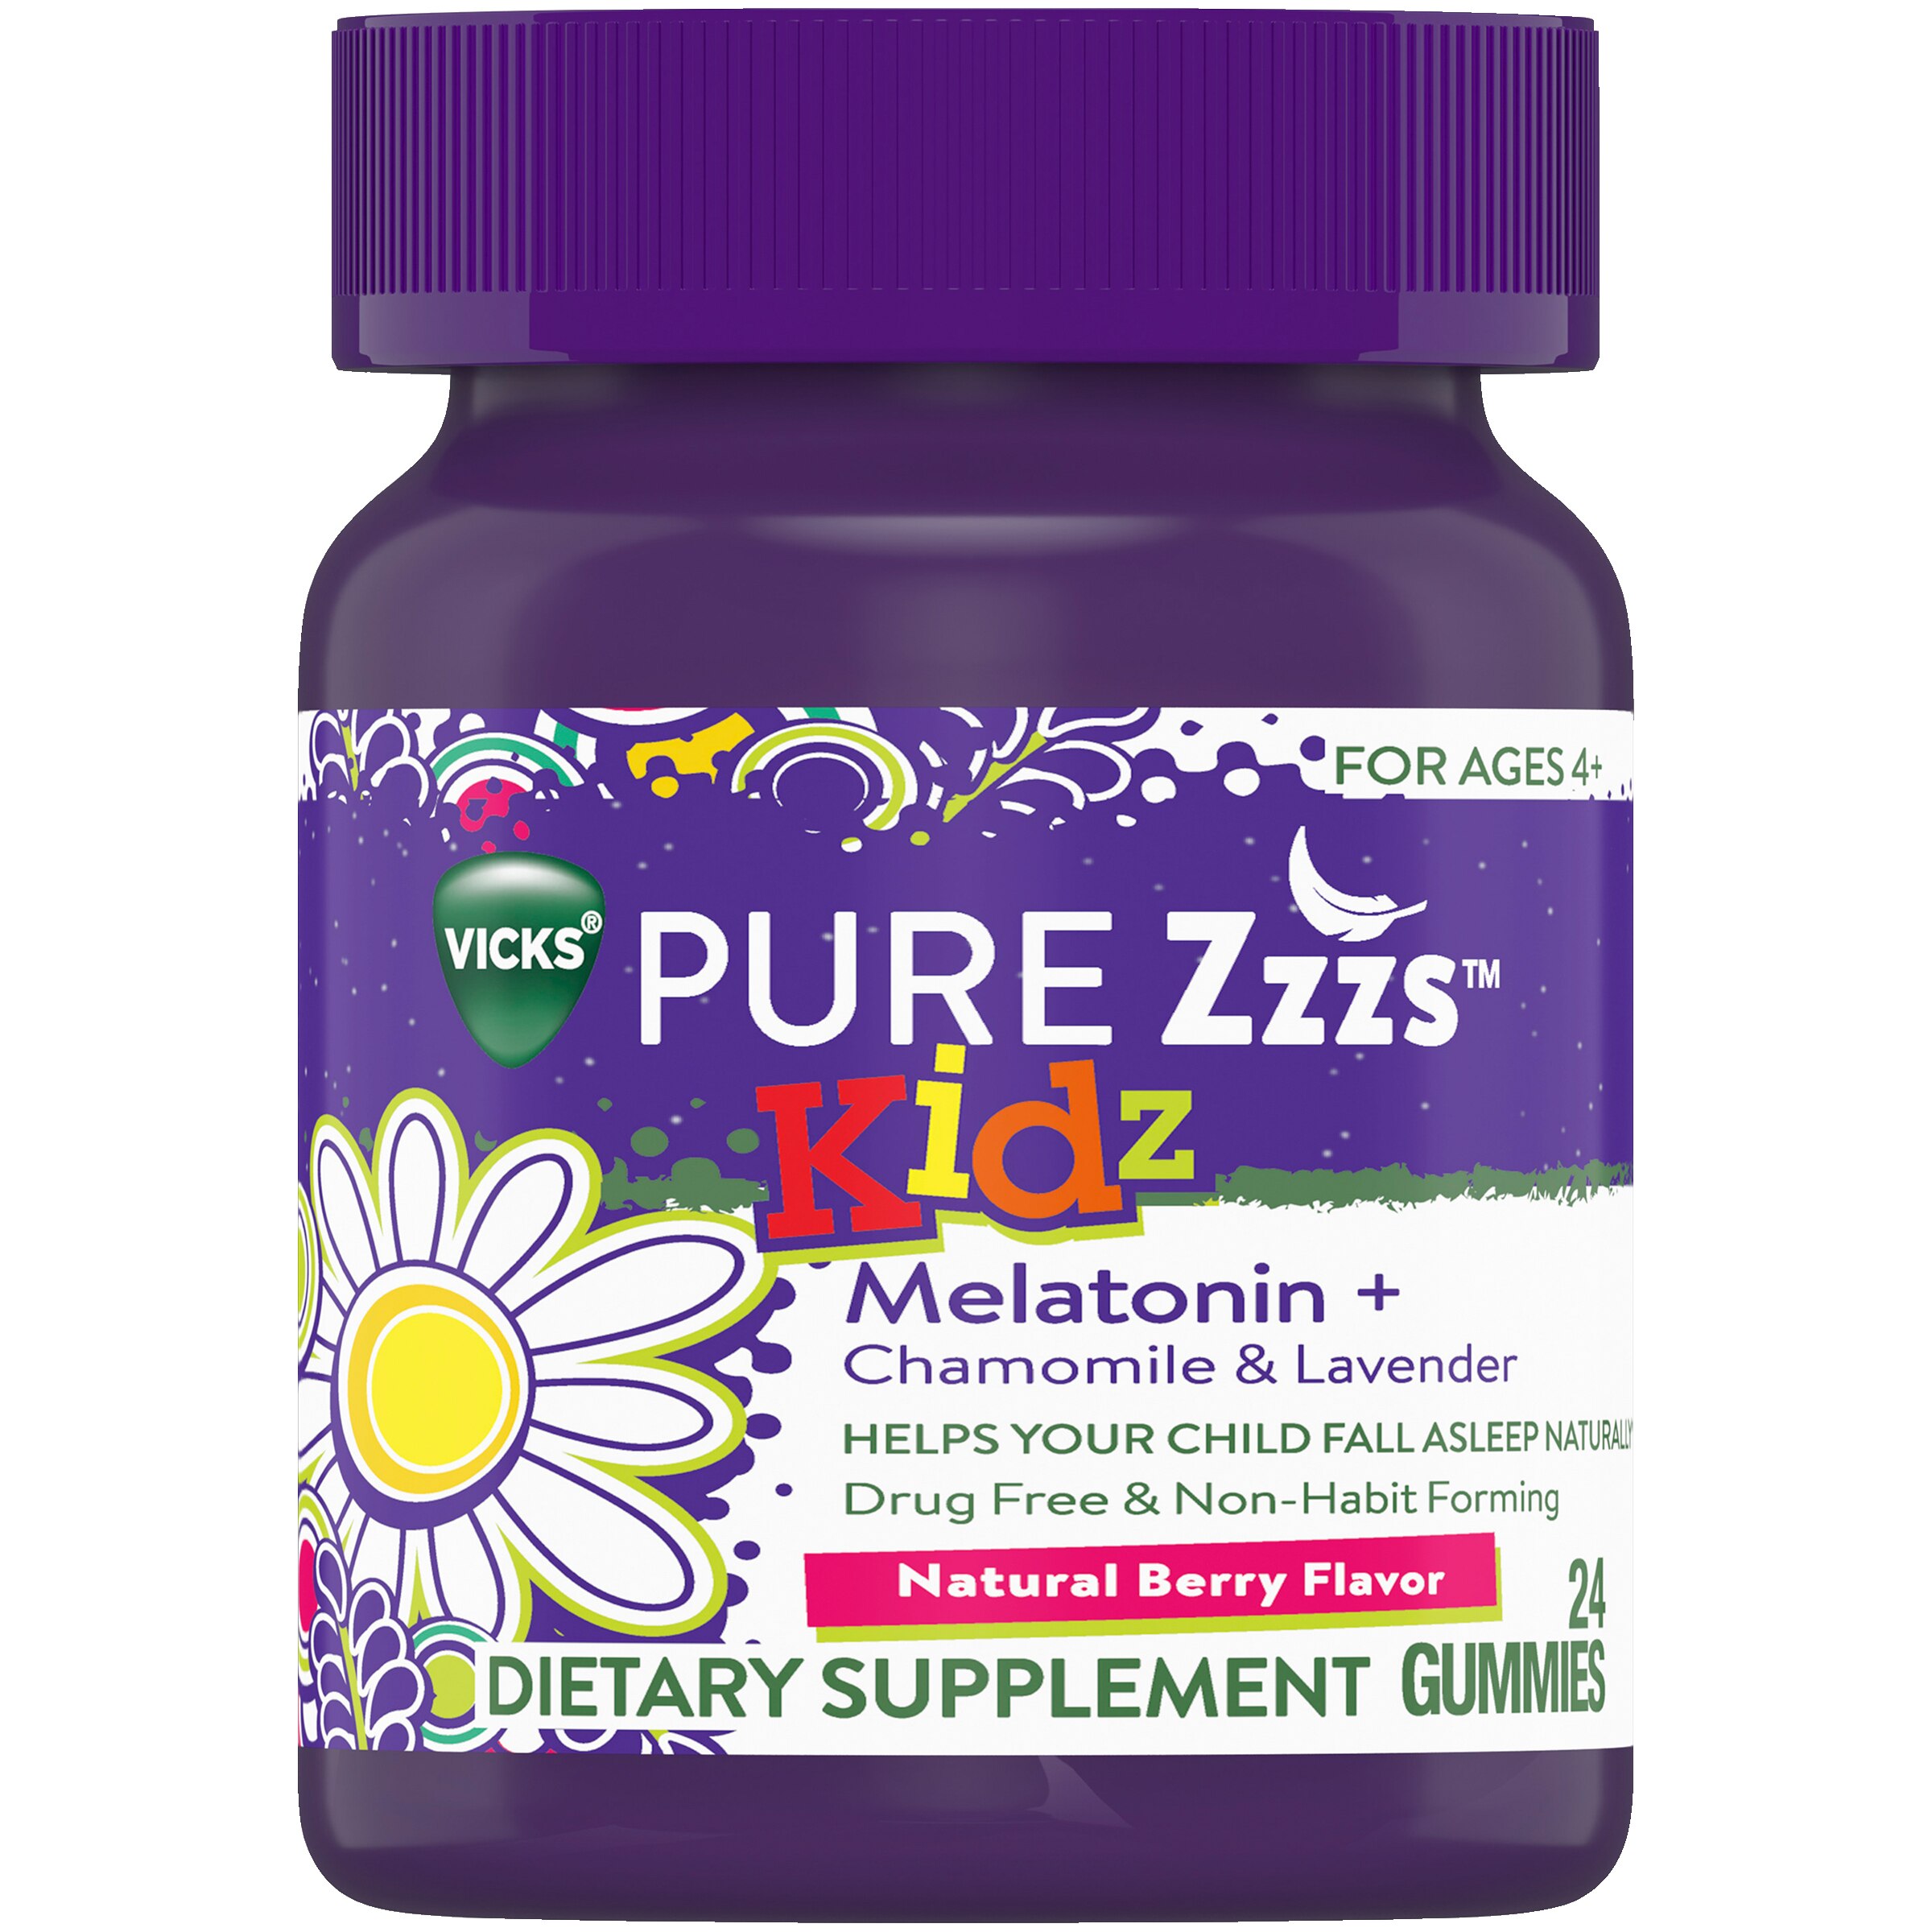 Vicks PURE Zzzs Kidz Melatonin - Suplemento de ayuda para dormir en gomitas, para niños, Berry, 24 u.